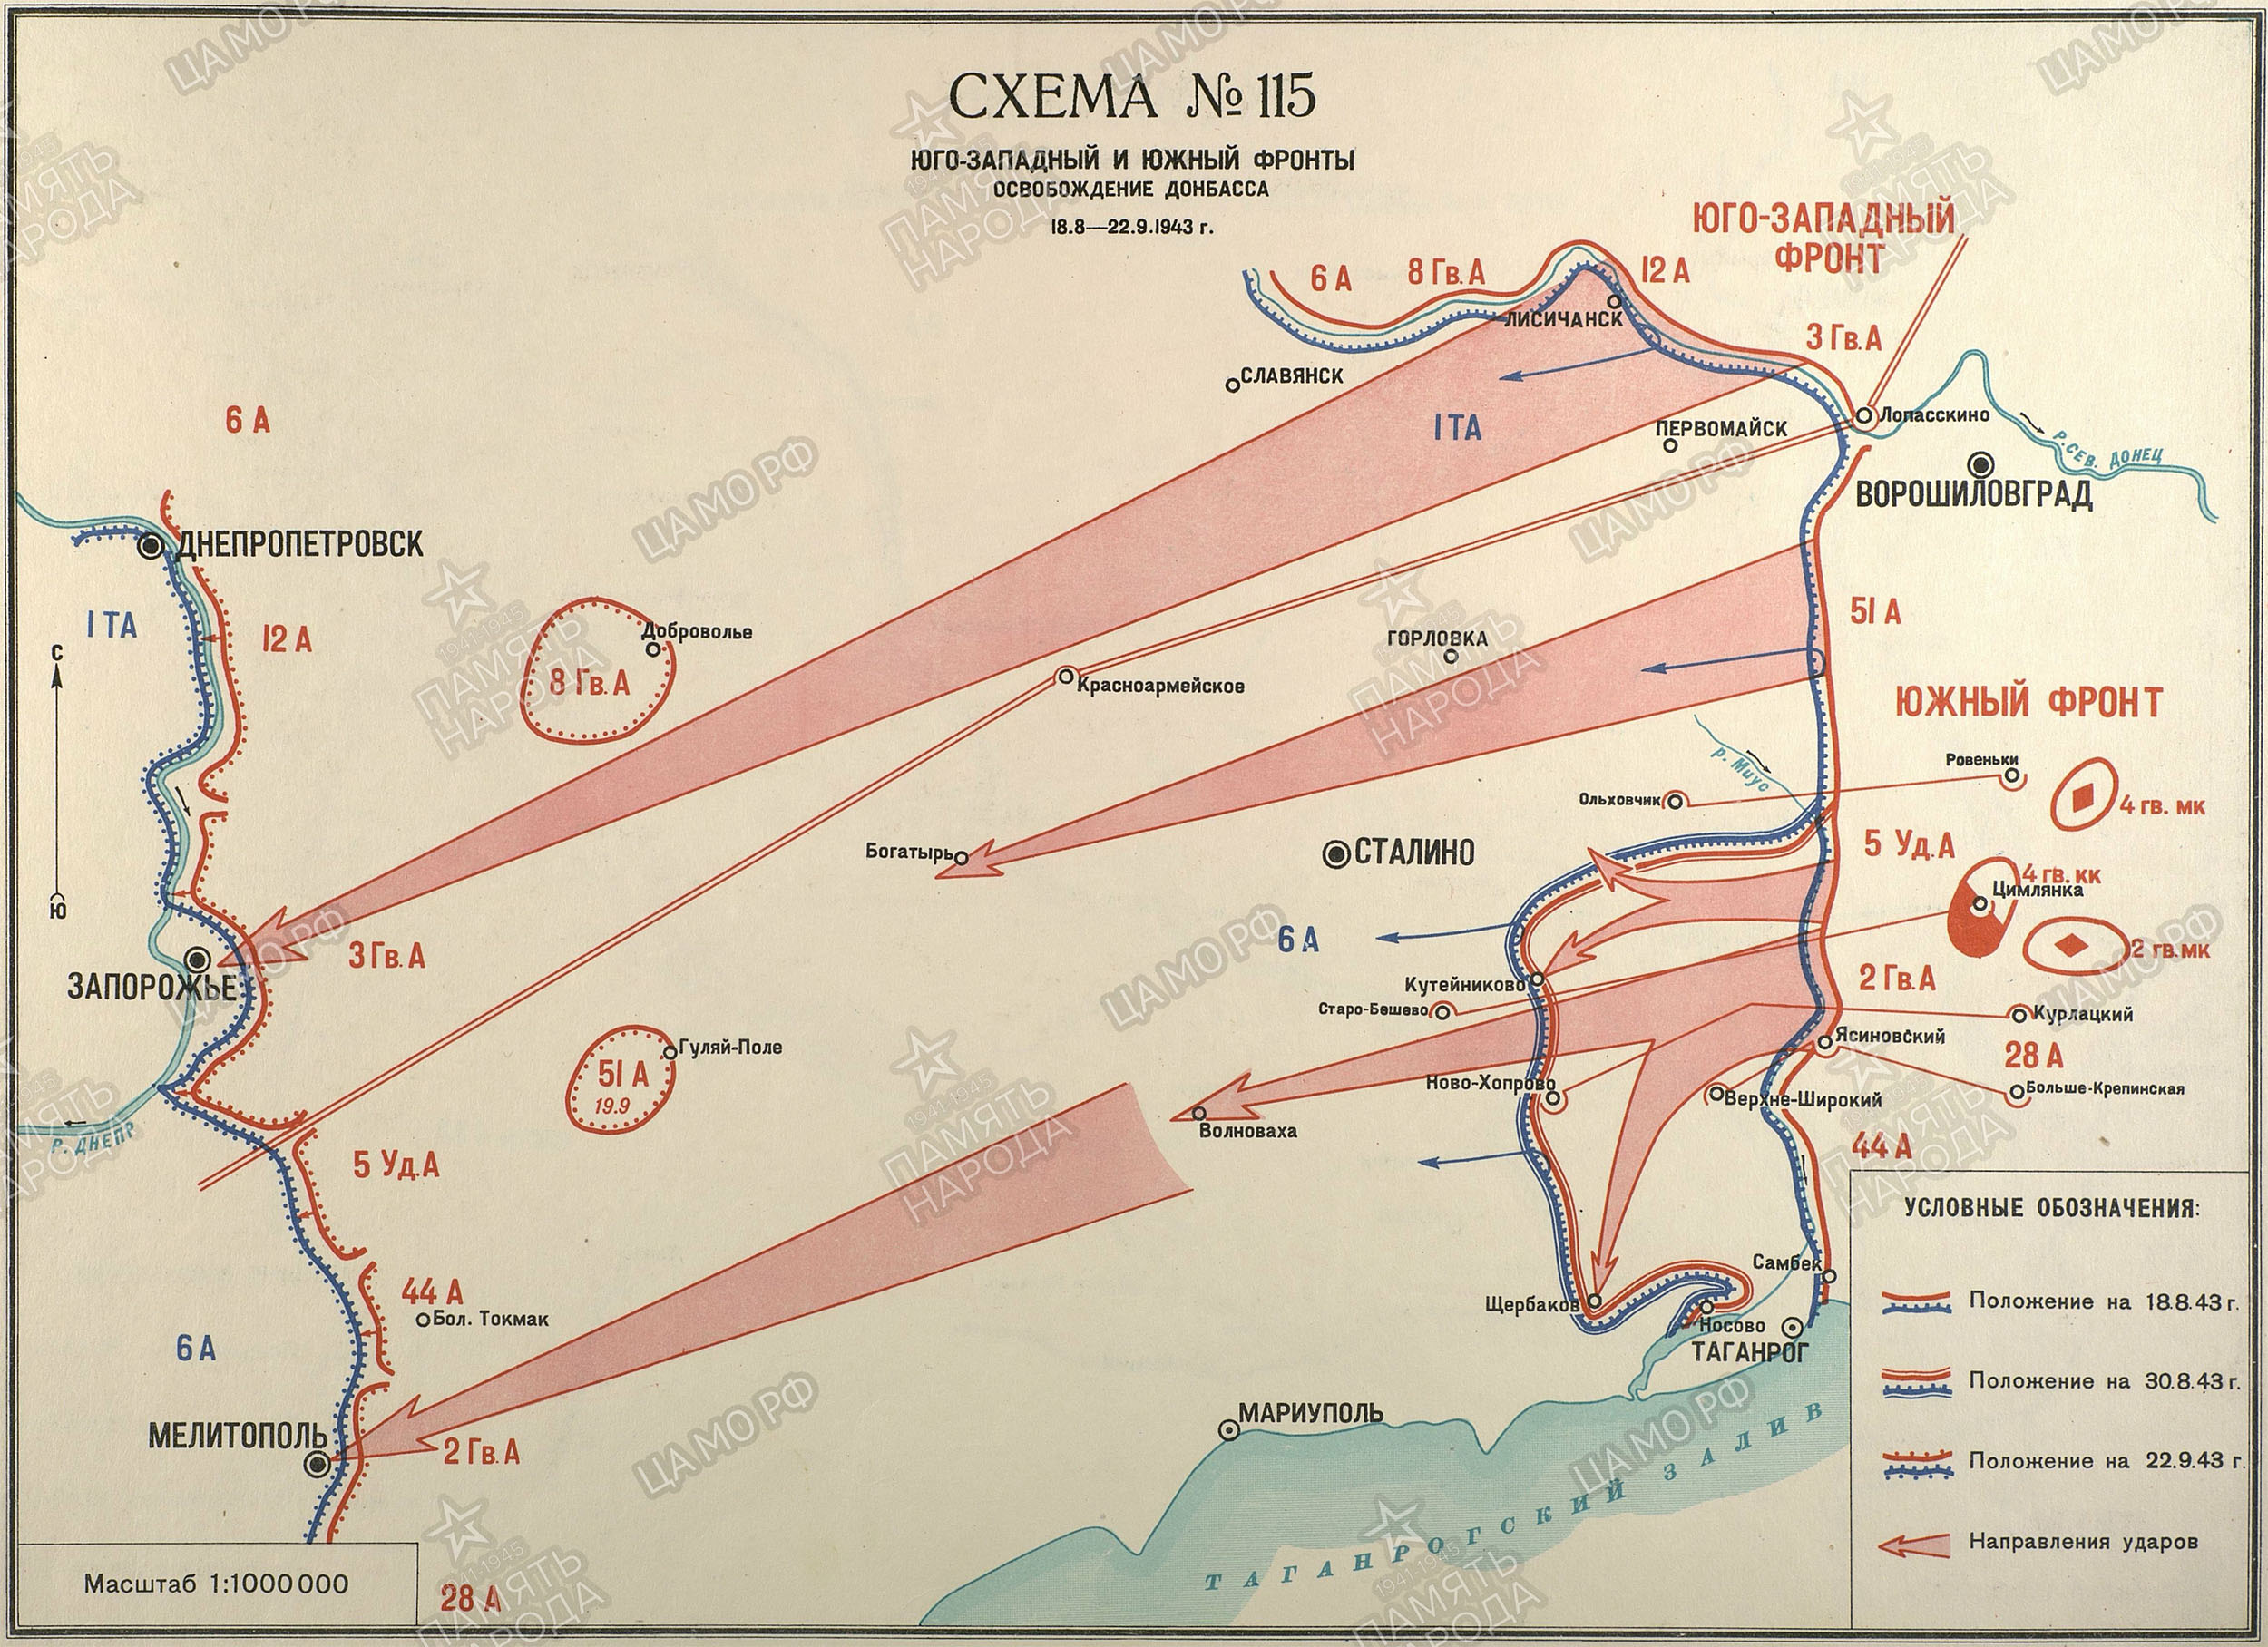 Освобождение Донбасса; период операции 18.08.1943 - 22.09.1943